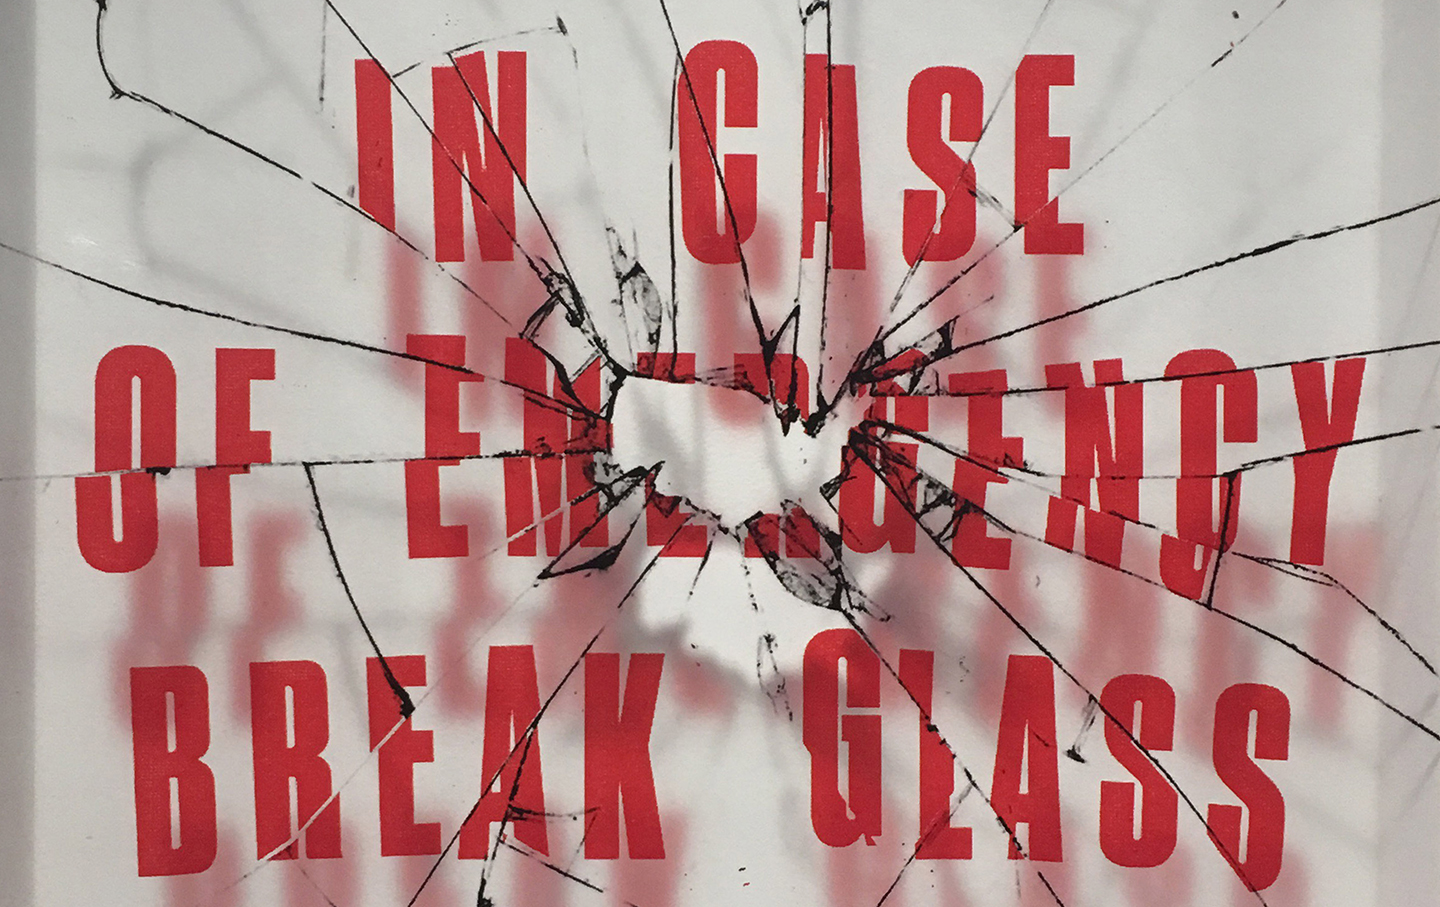 In Case of Emergency, Break Glass